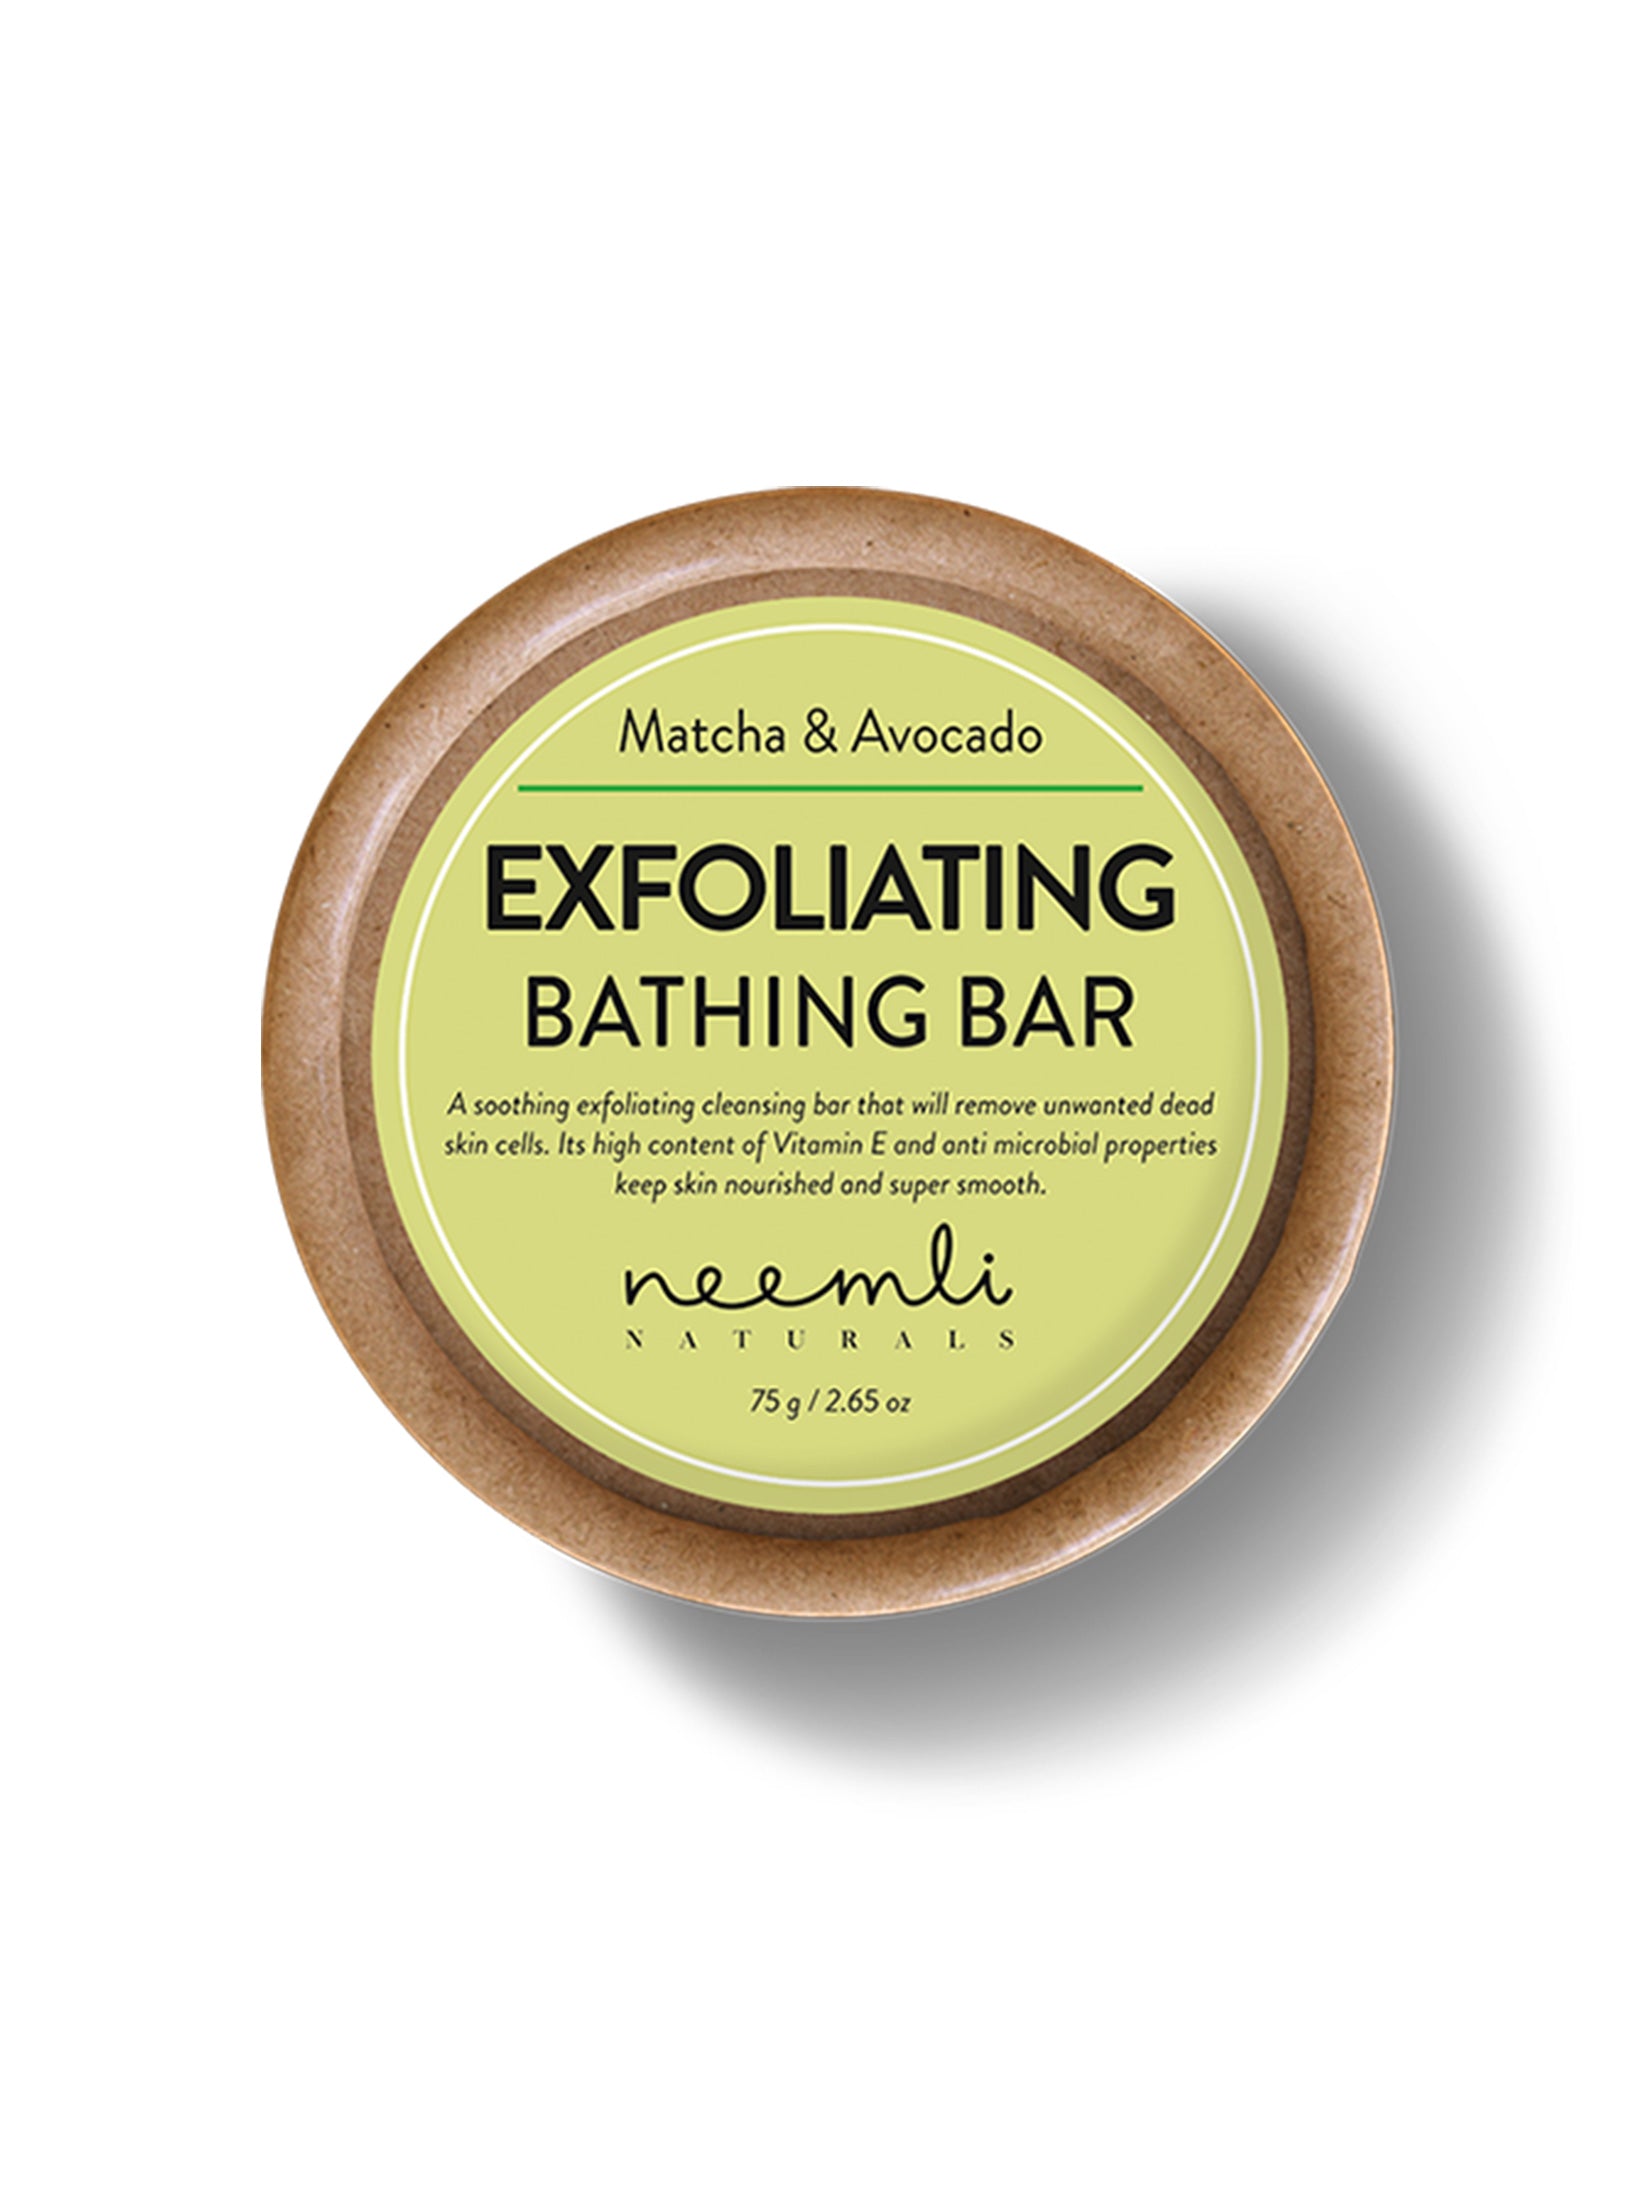 Matcha & Avocado Exfoliating Bathing Bar